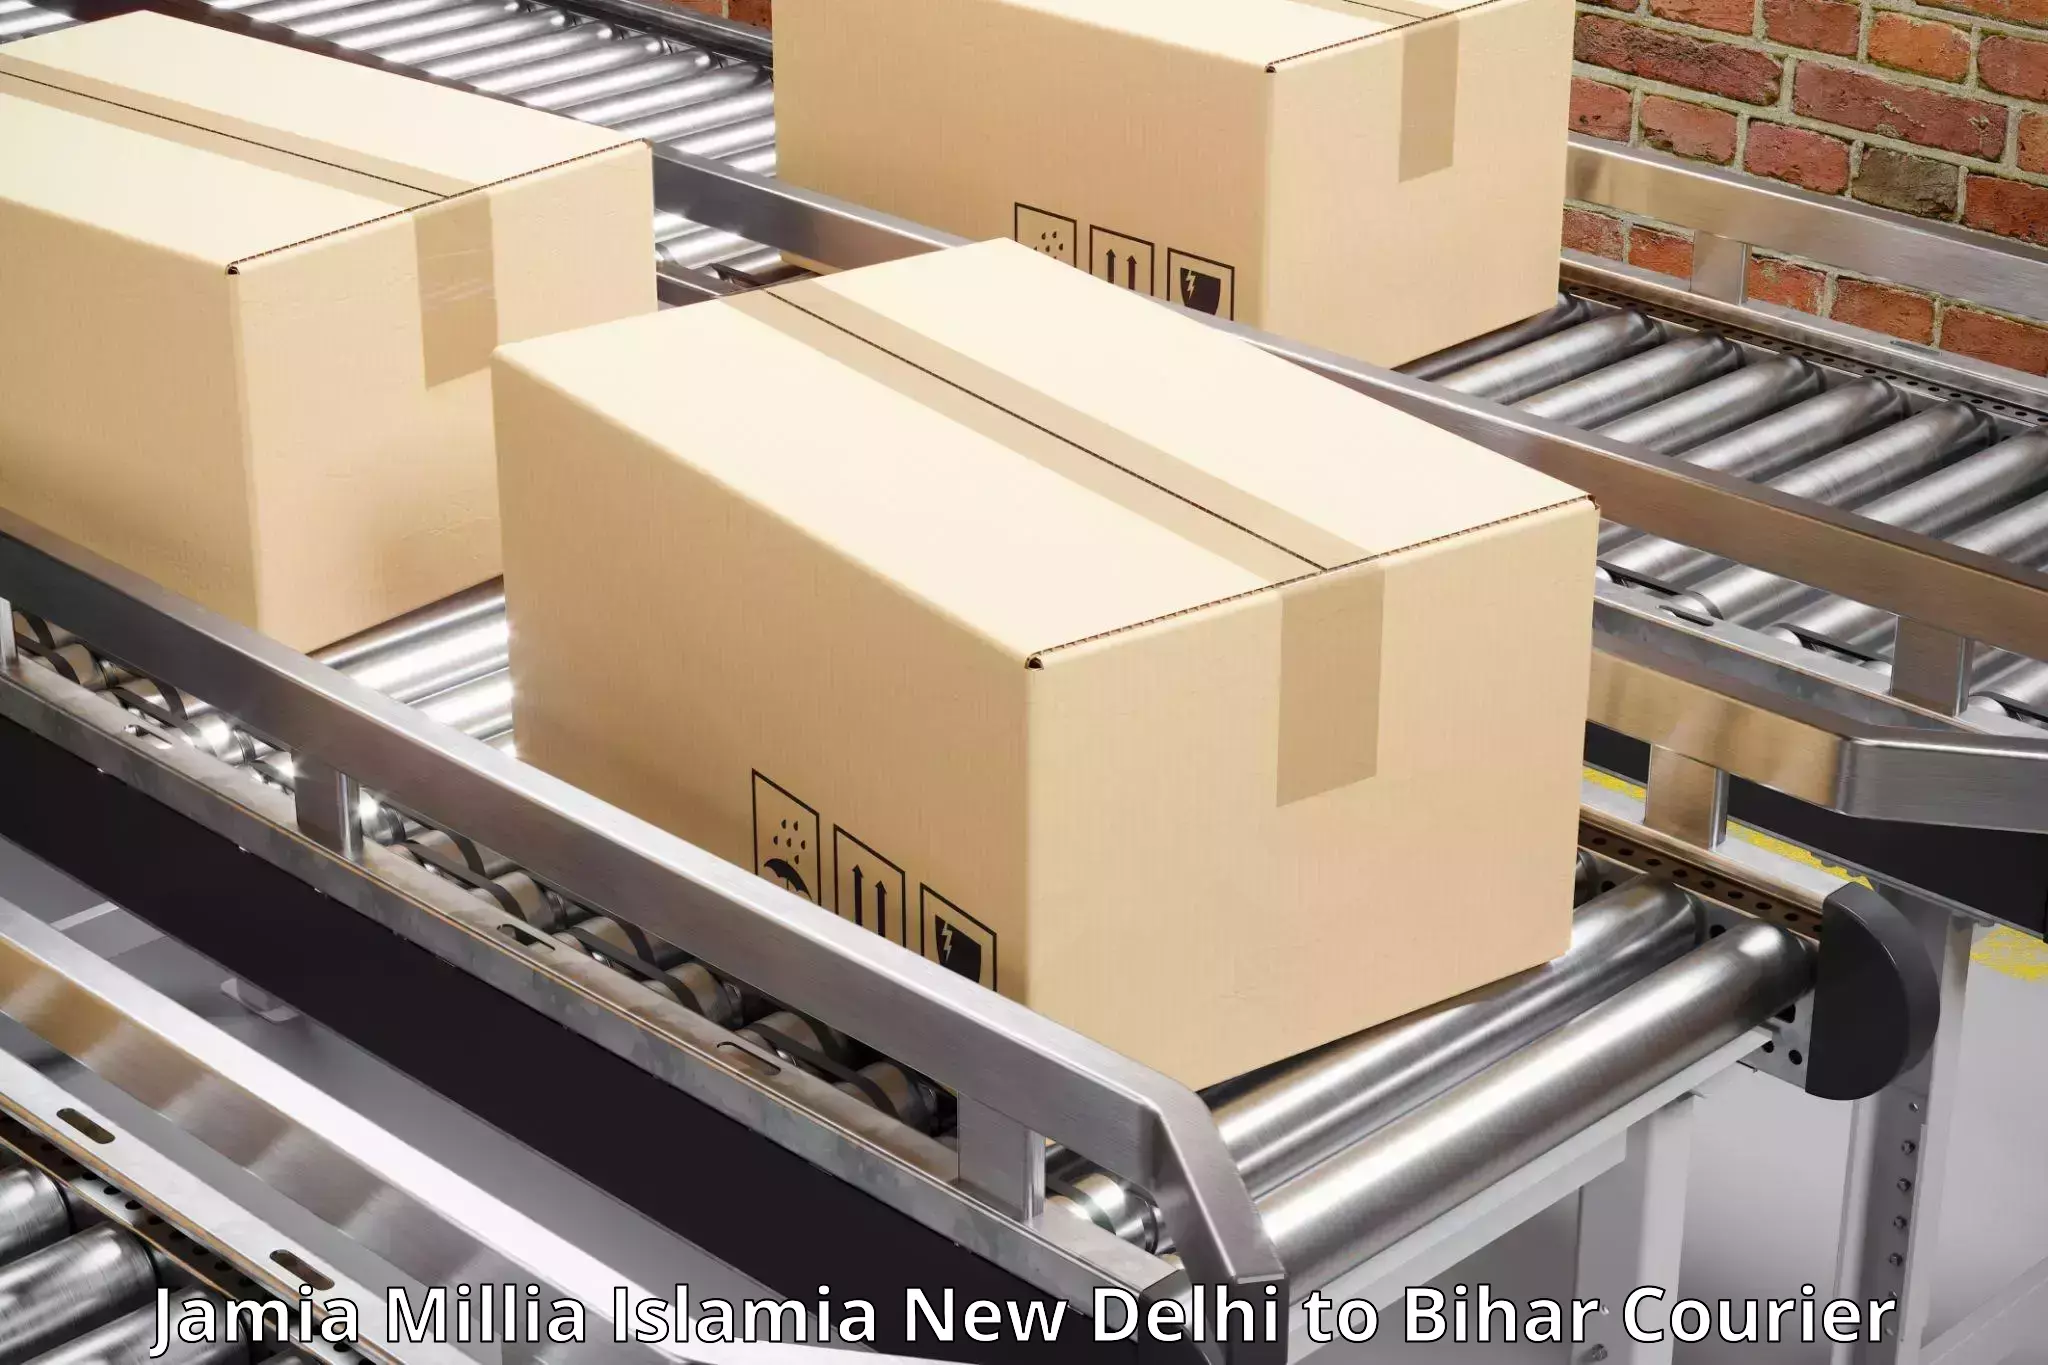 Express postal services Jamia Millia Islamia New Delhi to Siwan